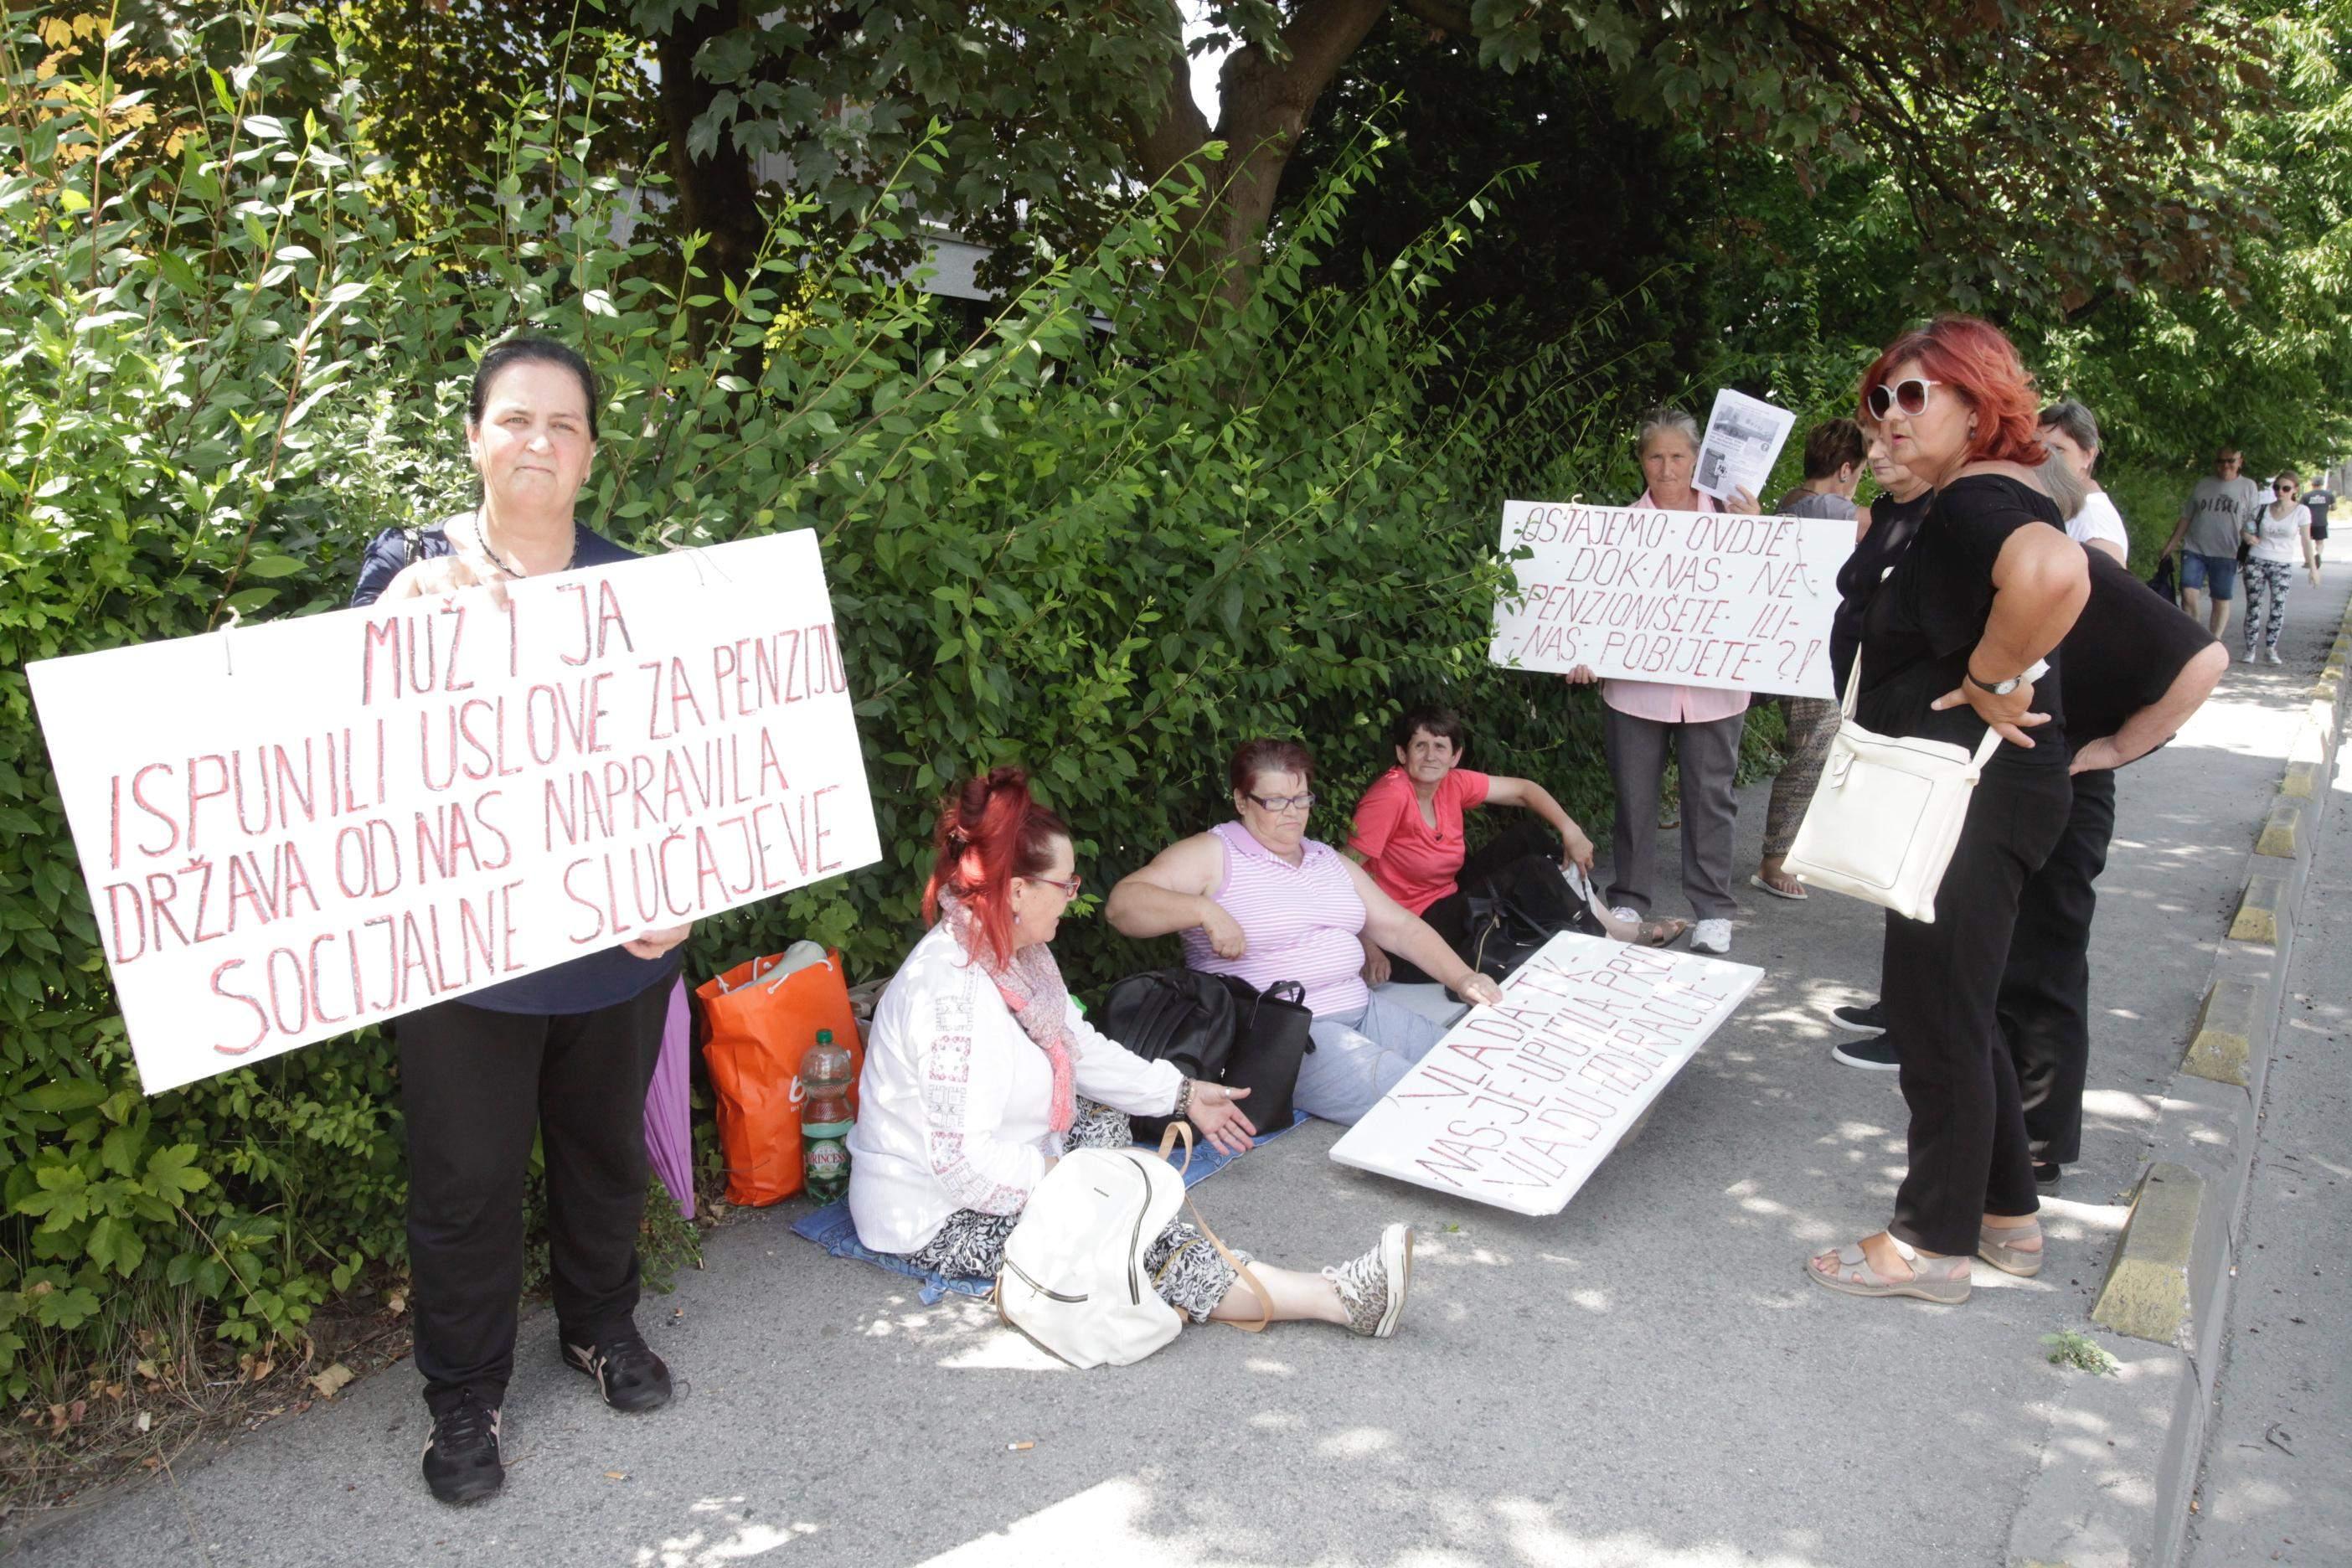 S posljednjih protesta radnica "Borca" koje traže uvezivanje staža - Avaz